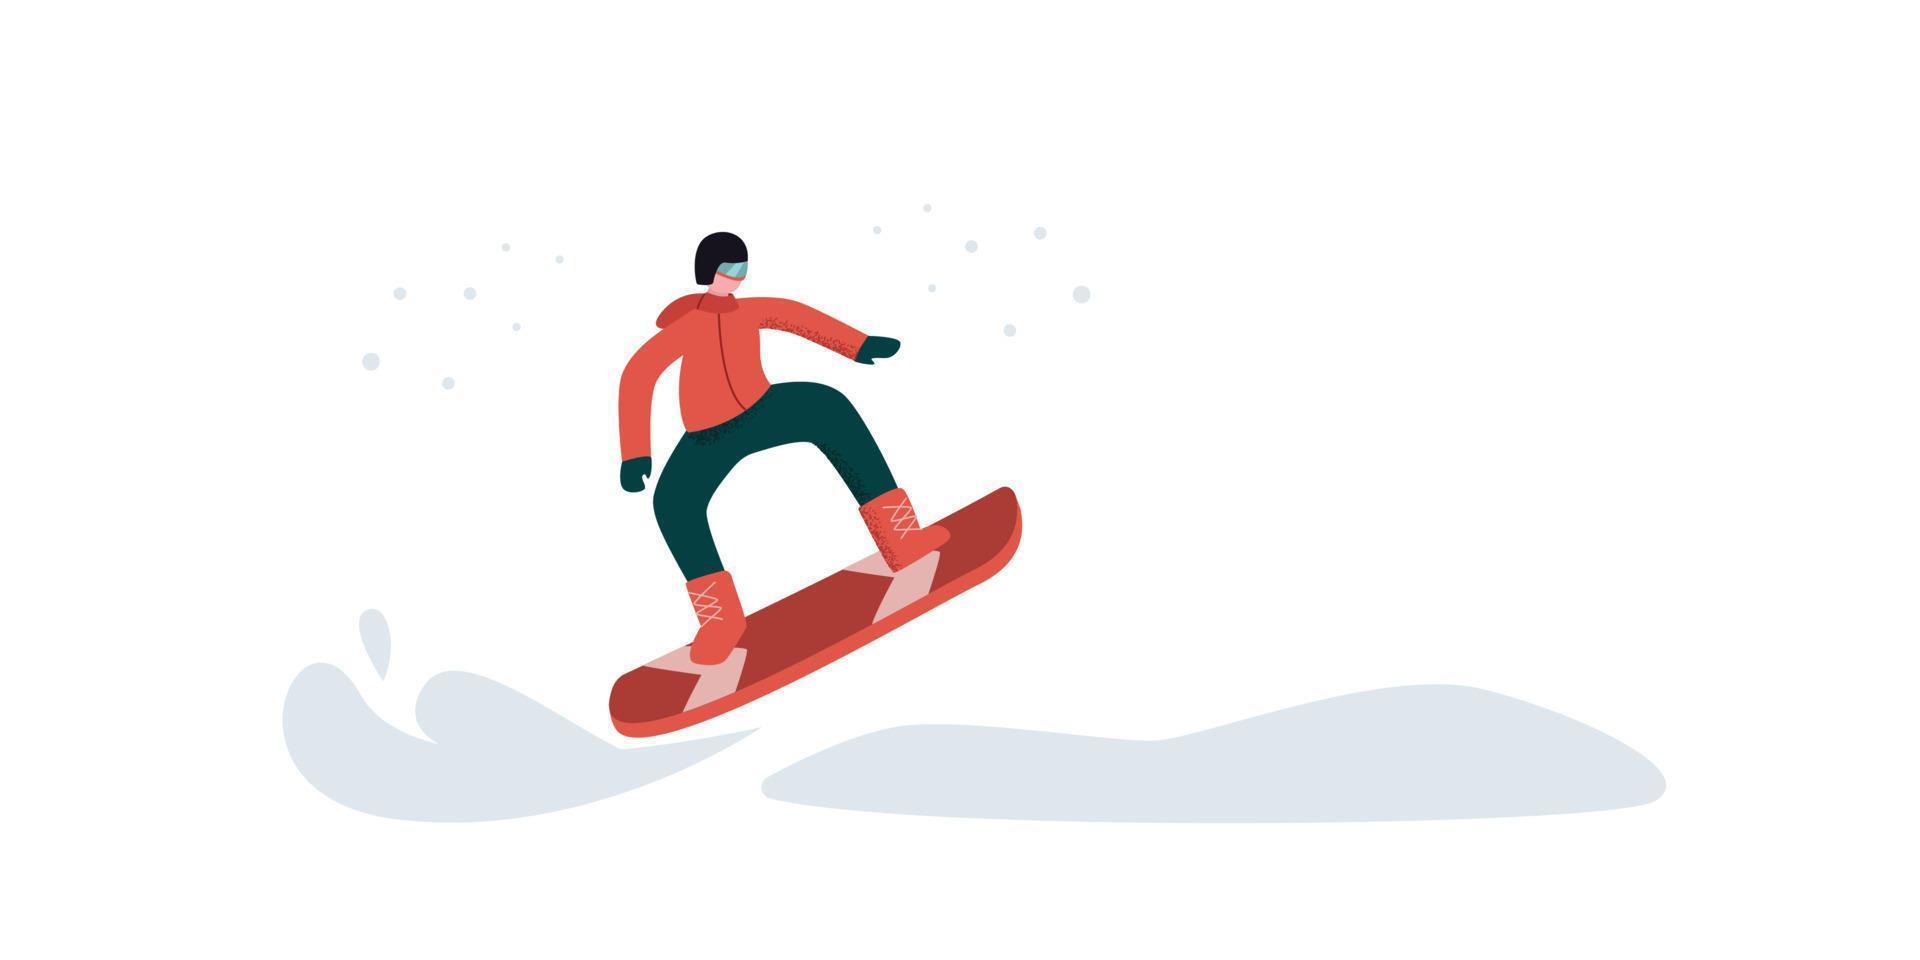 um homem está envolvido em snowboard. o conceito de um snowboarder voando rapidamente em extensões nevadas. ilustração de um estilo de vida extremo e ativo, esporte. vetor